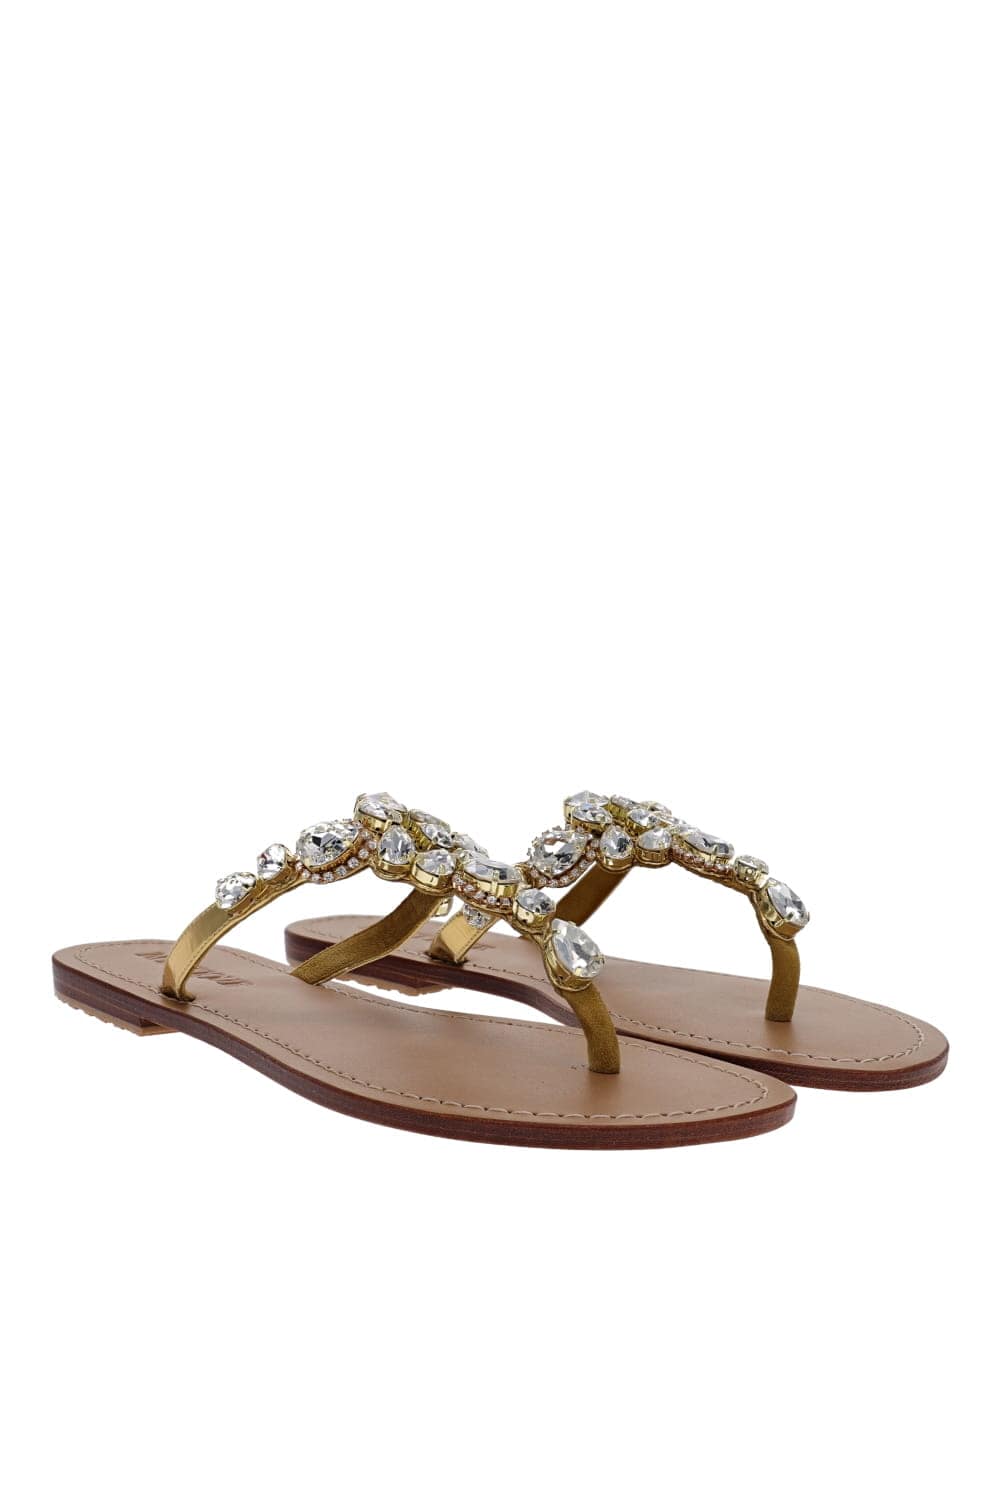 MYSTIQUE Gold Crystal Embellished Sandals